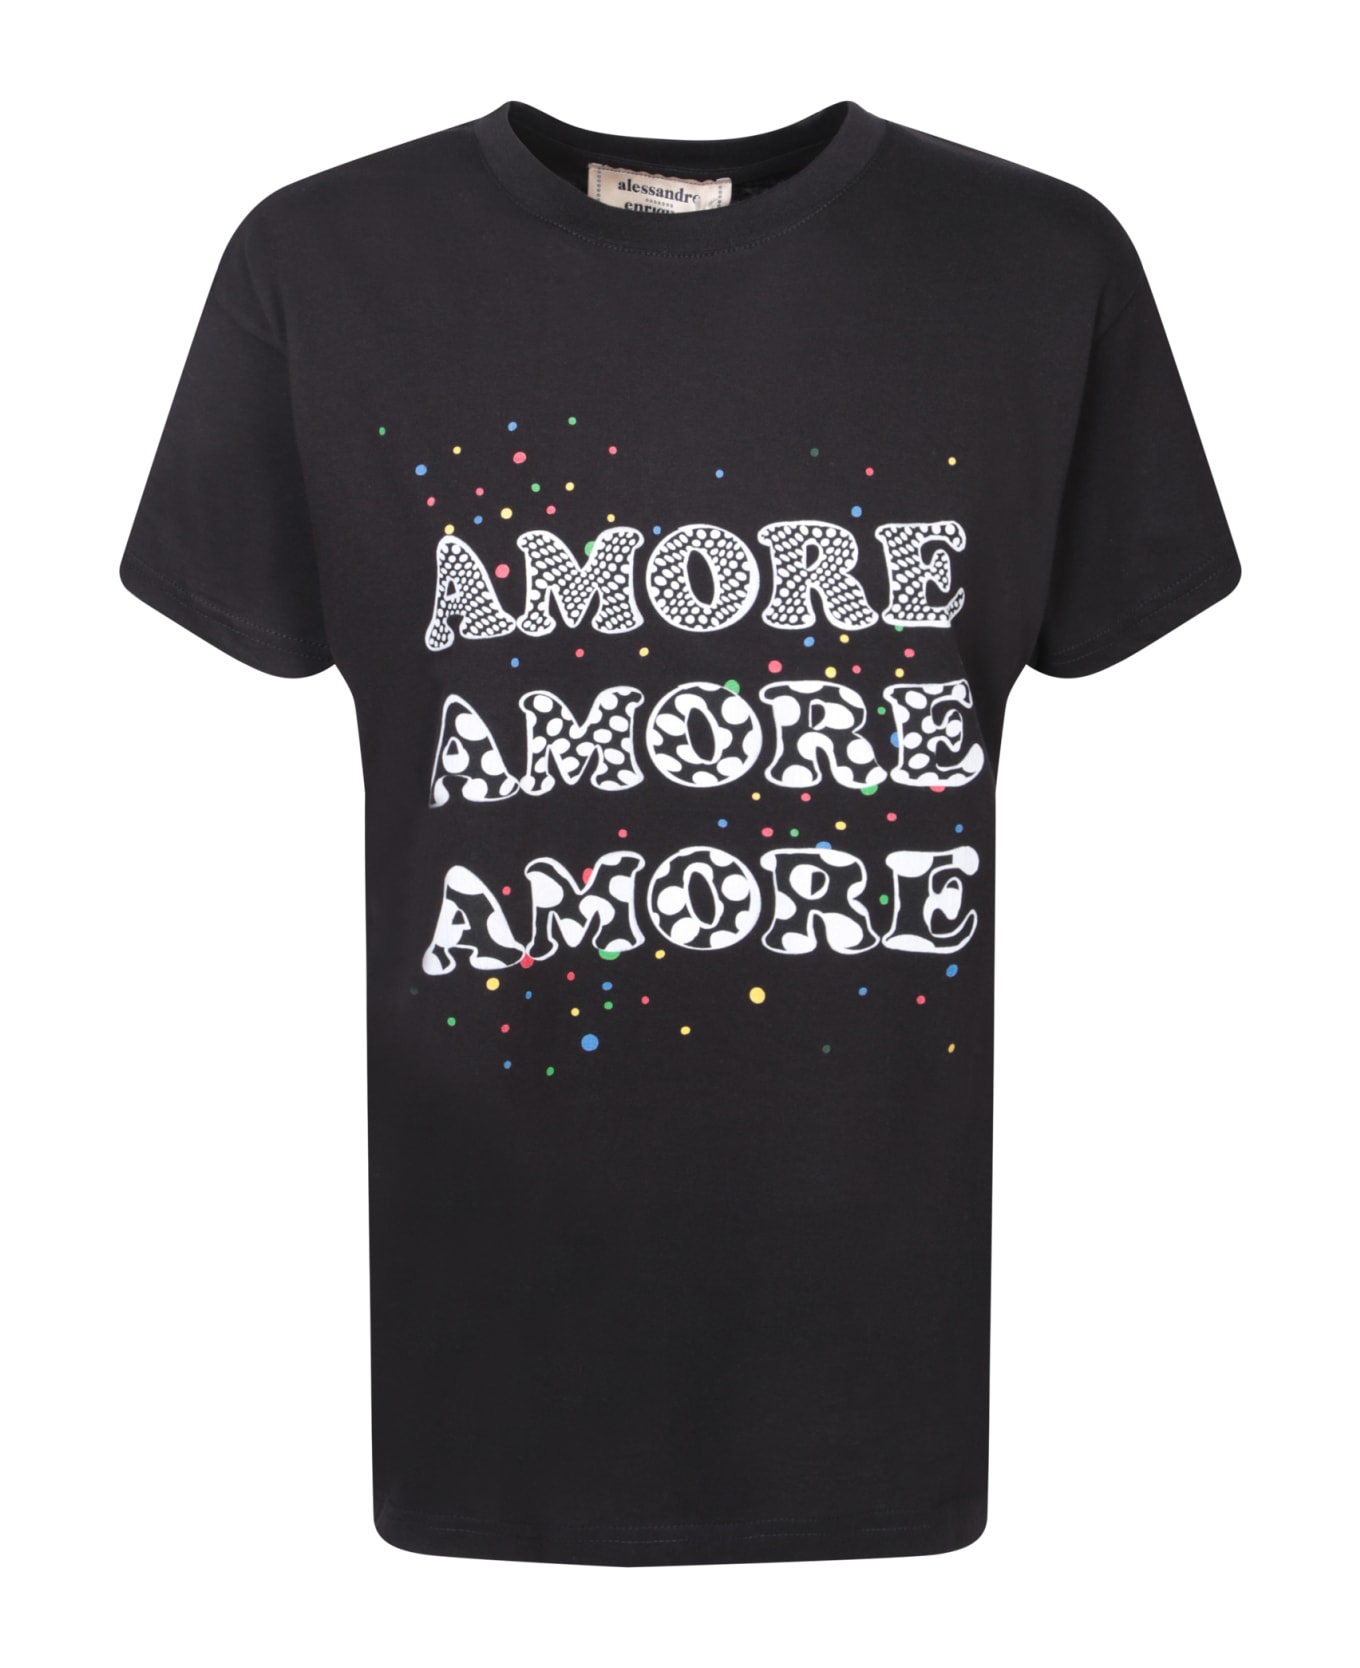 Alessandro Enriquez Amore Black T-shirt - Black Tシャツ